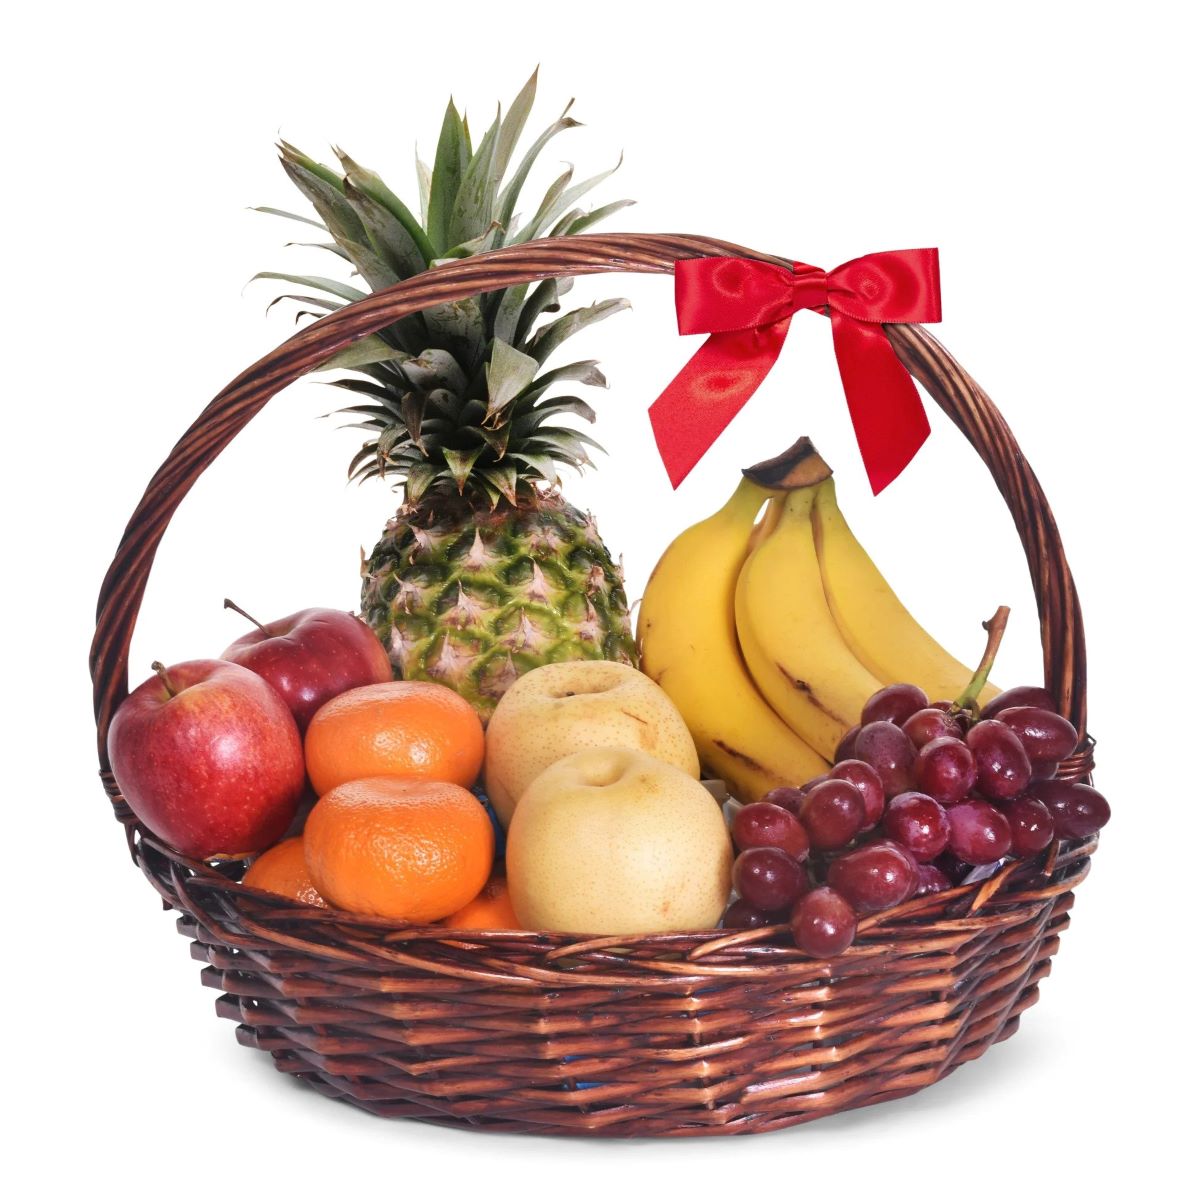 10 Amazing Fruit Baskets for 2023